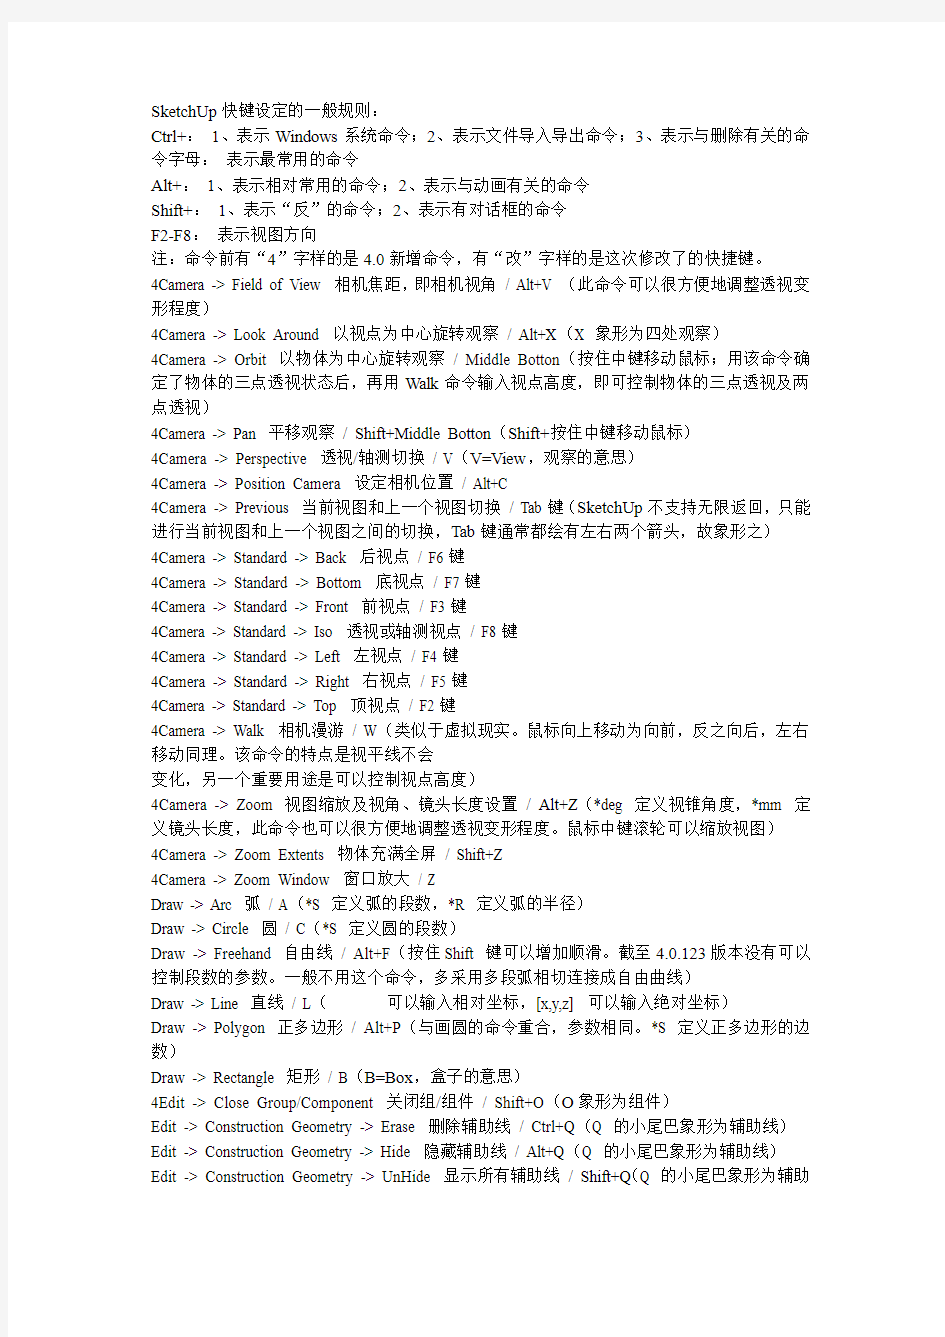 SketchUp命令的中文翻译及快捷键设定